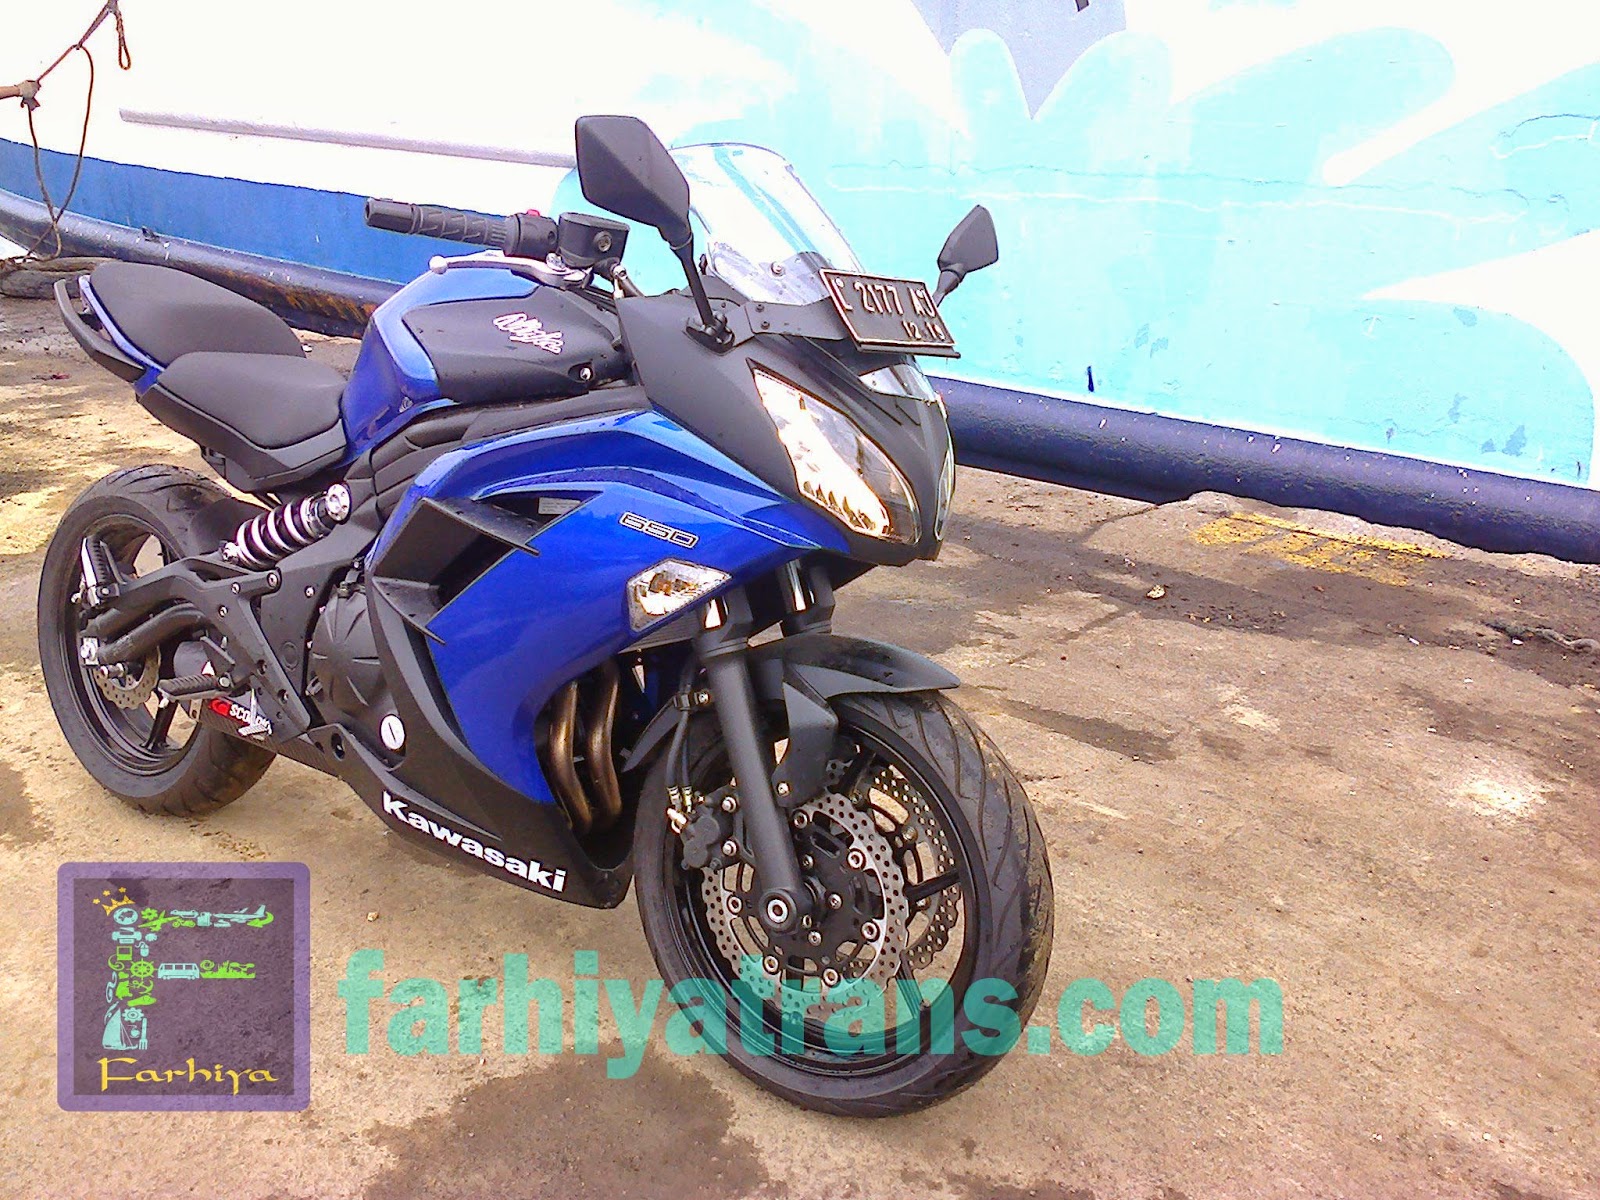 Pengiriman Sepeda Motor Kawasaki Ninja EX 650 14 Januari 2015